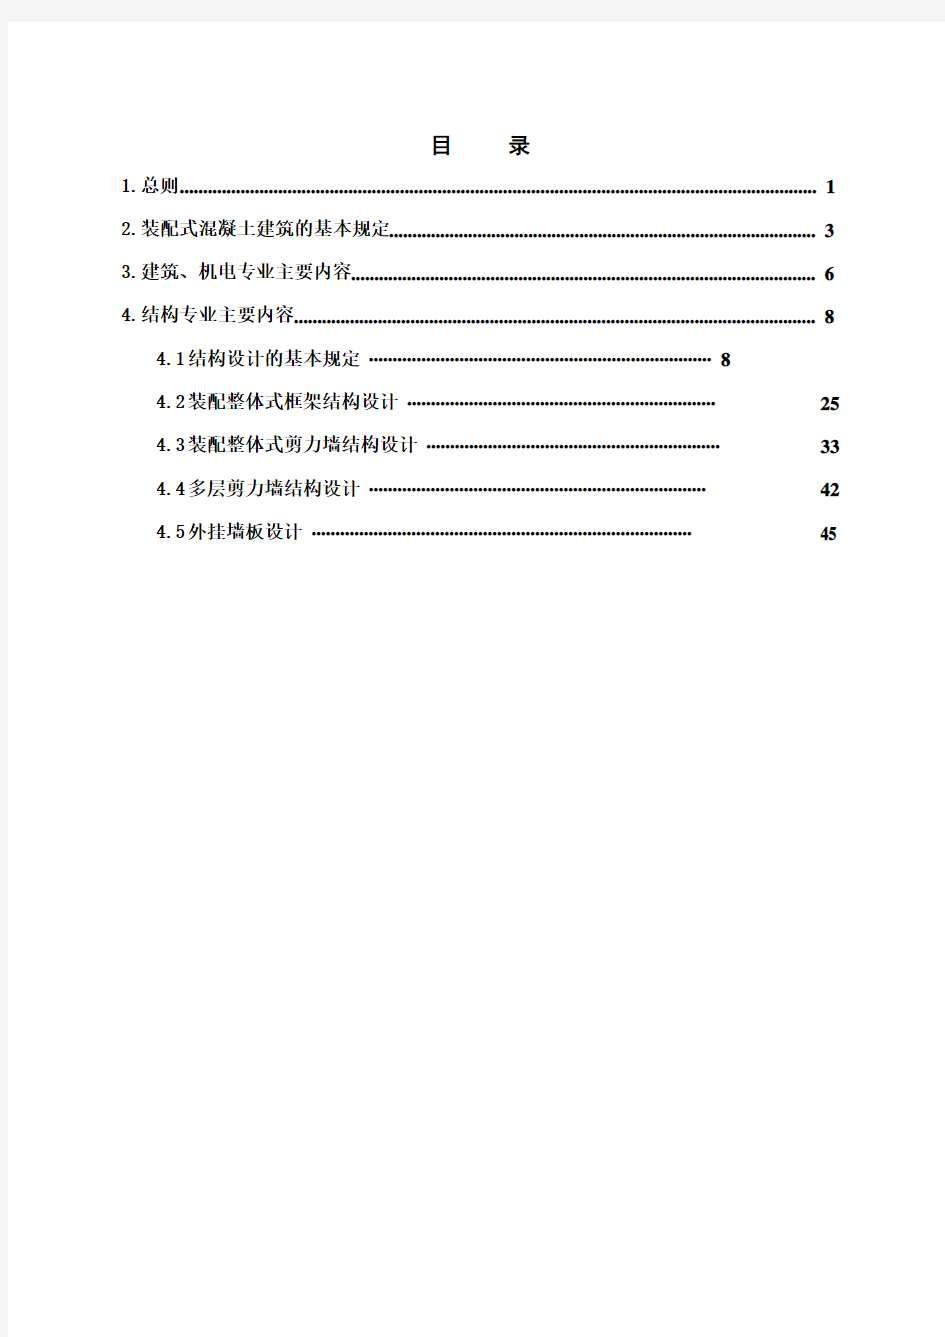 上海市 装配式混凝土建筑质量审查手册